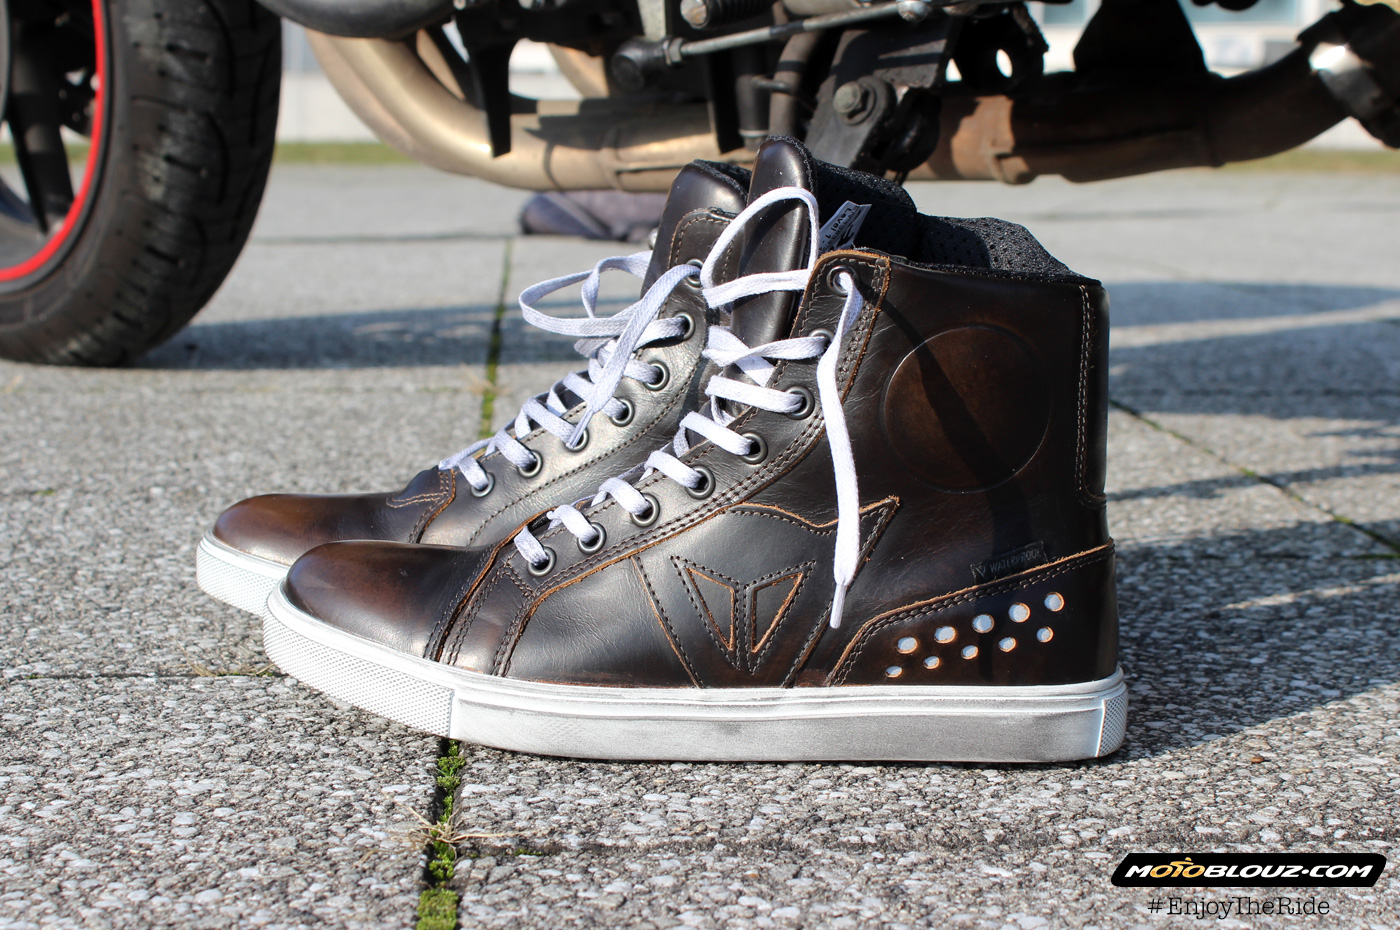 Empuje hacia abajo Convertir facil de manejar Prueba: Zapatillas vintage Dainese Street Rocker D-WP